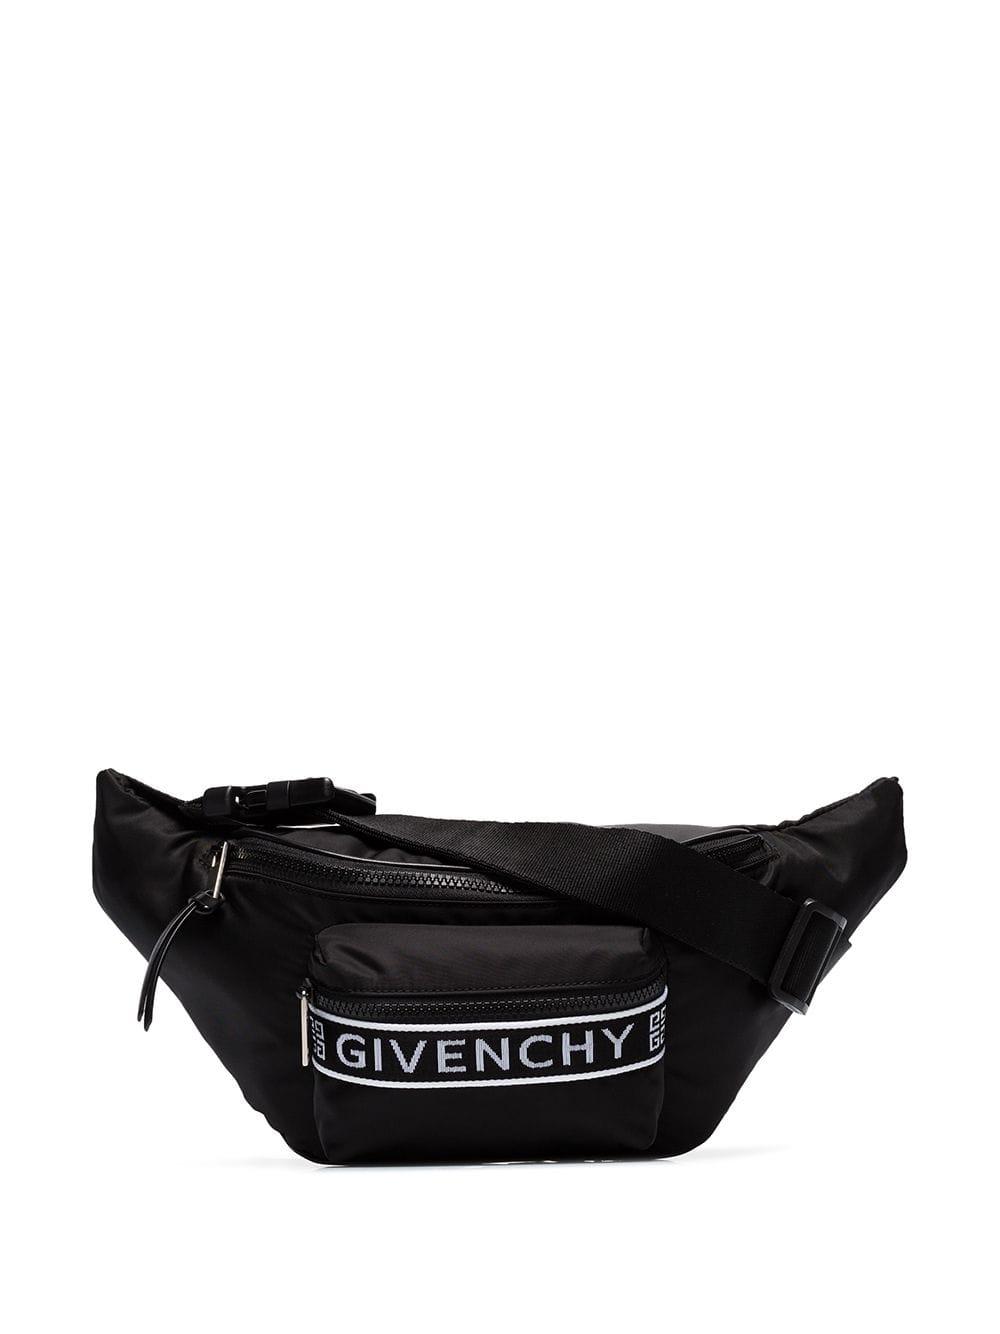 Givenchy Logo Belt Bag in Black for Men - Save 38% - Lyst